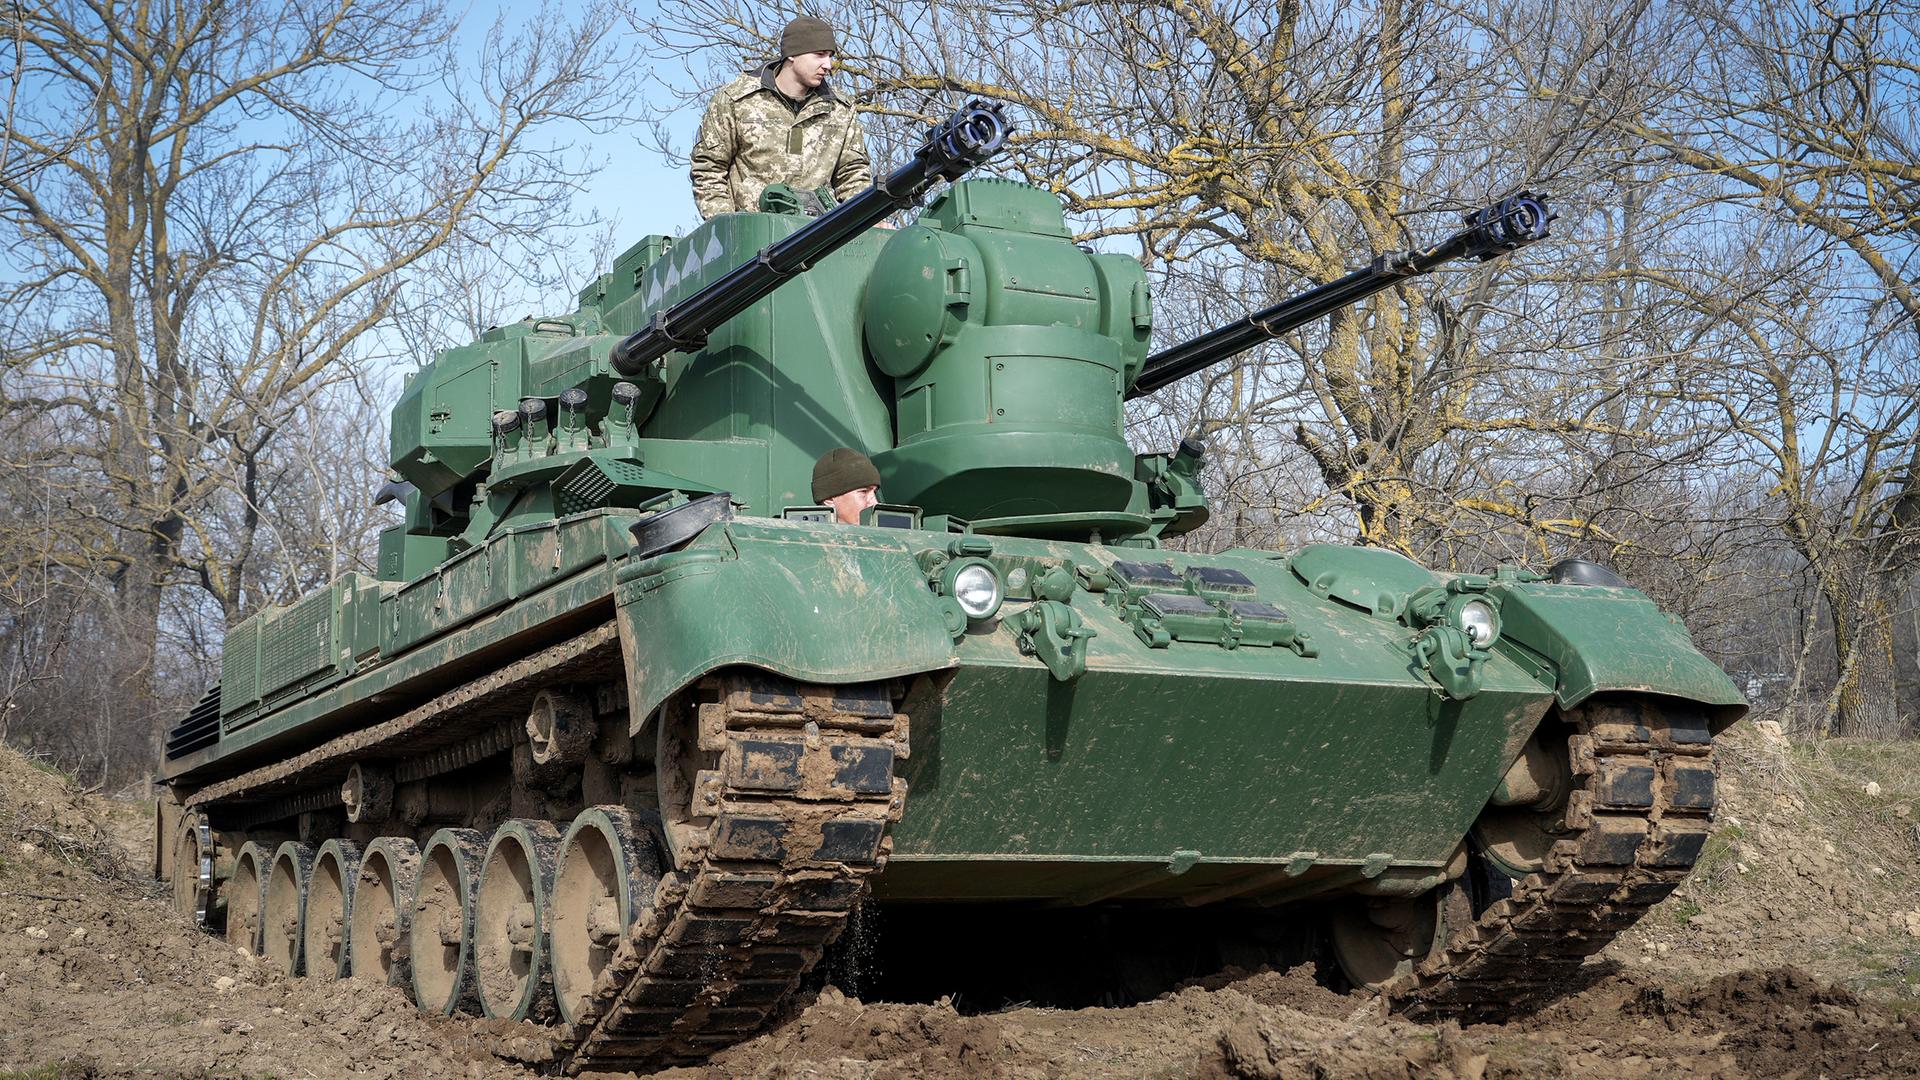 Ein Gepard Flugabwehrkanonenpanzer fährt mit seiner Besatzung über ein Feld östlich von Odessa. Der von Deutschland gelieferte Panzer wird hier zur Abwehr von feindlichen Drohnen, Flugzeugen oder Hubschraubern eingesetzt.